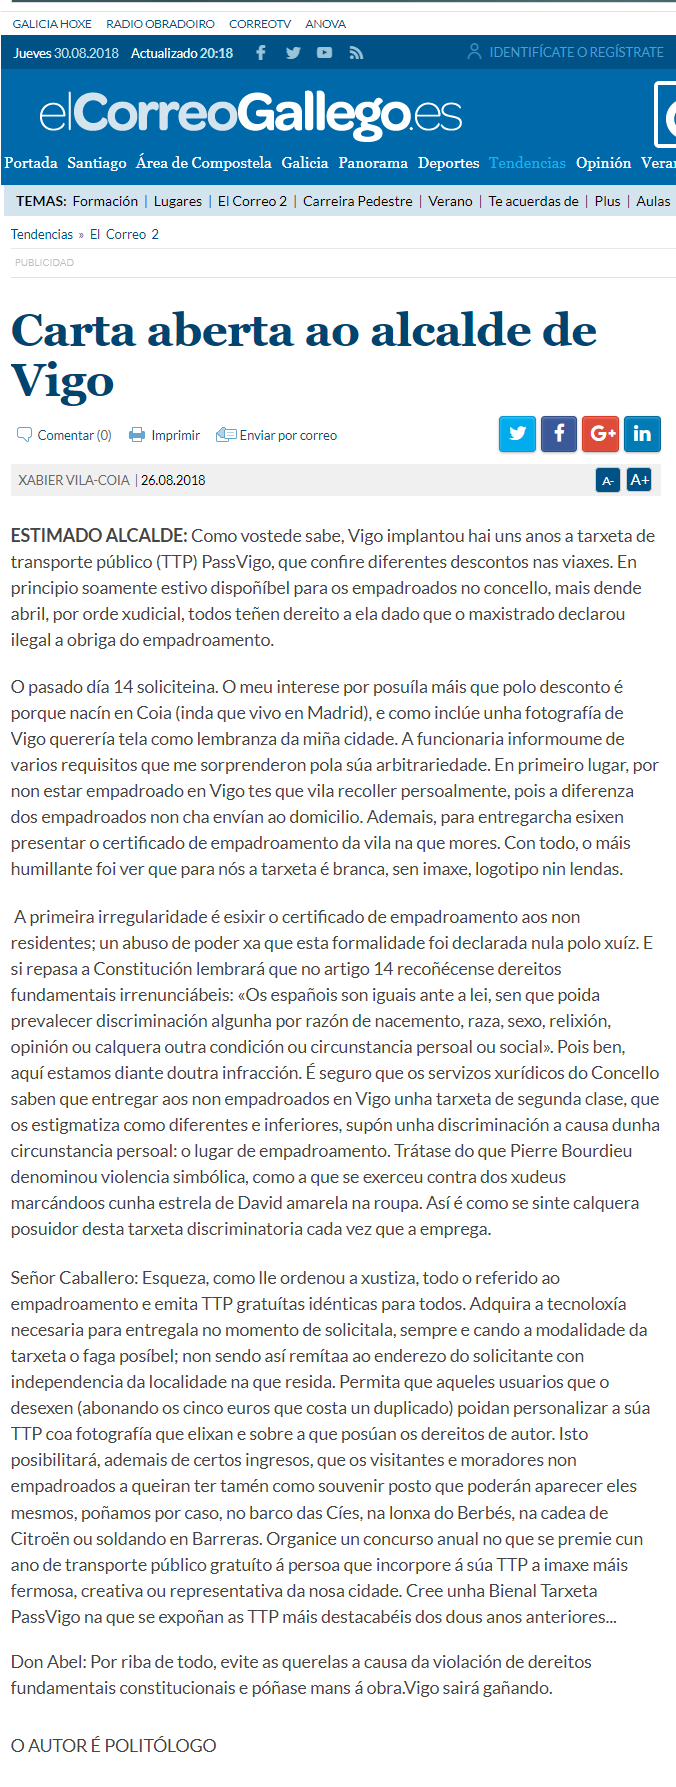 Sobre a Passvigo/Carta aberta ao alcalde de Vigo.